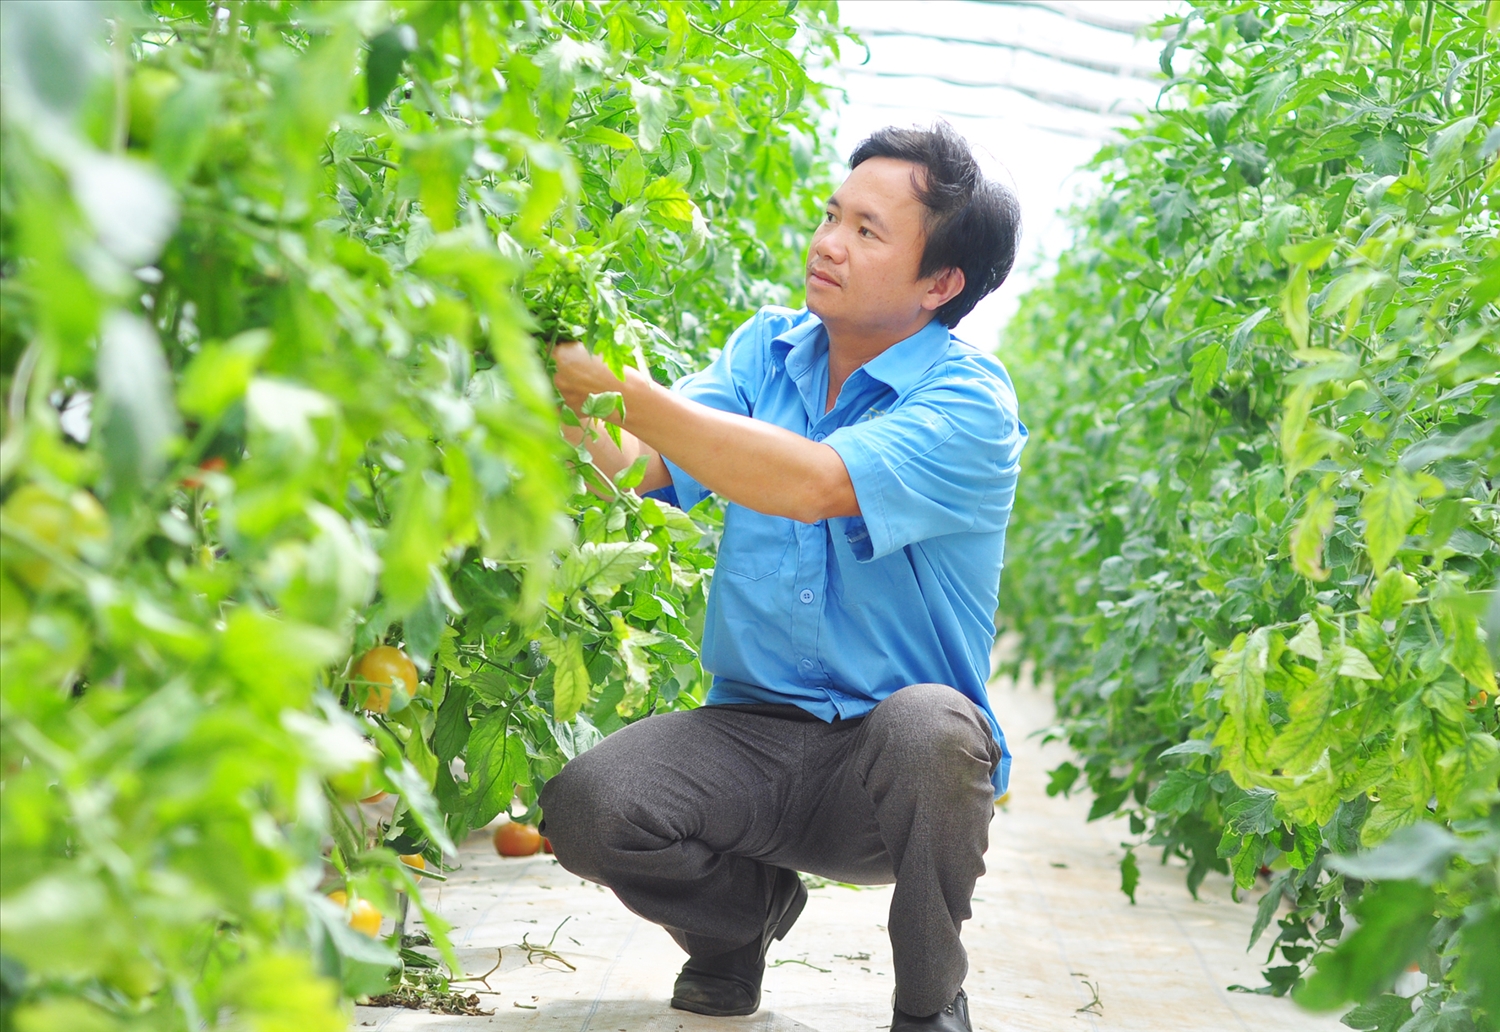 Hình ảnh: Lâm Đồng: Tăng cường kiểm tra các cơ sở kinh doanh nông sản sau vụ rau chợ “đội lốt” VietGAP vào siêu thị số 1